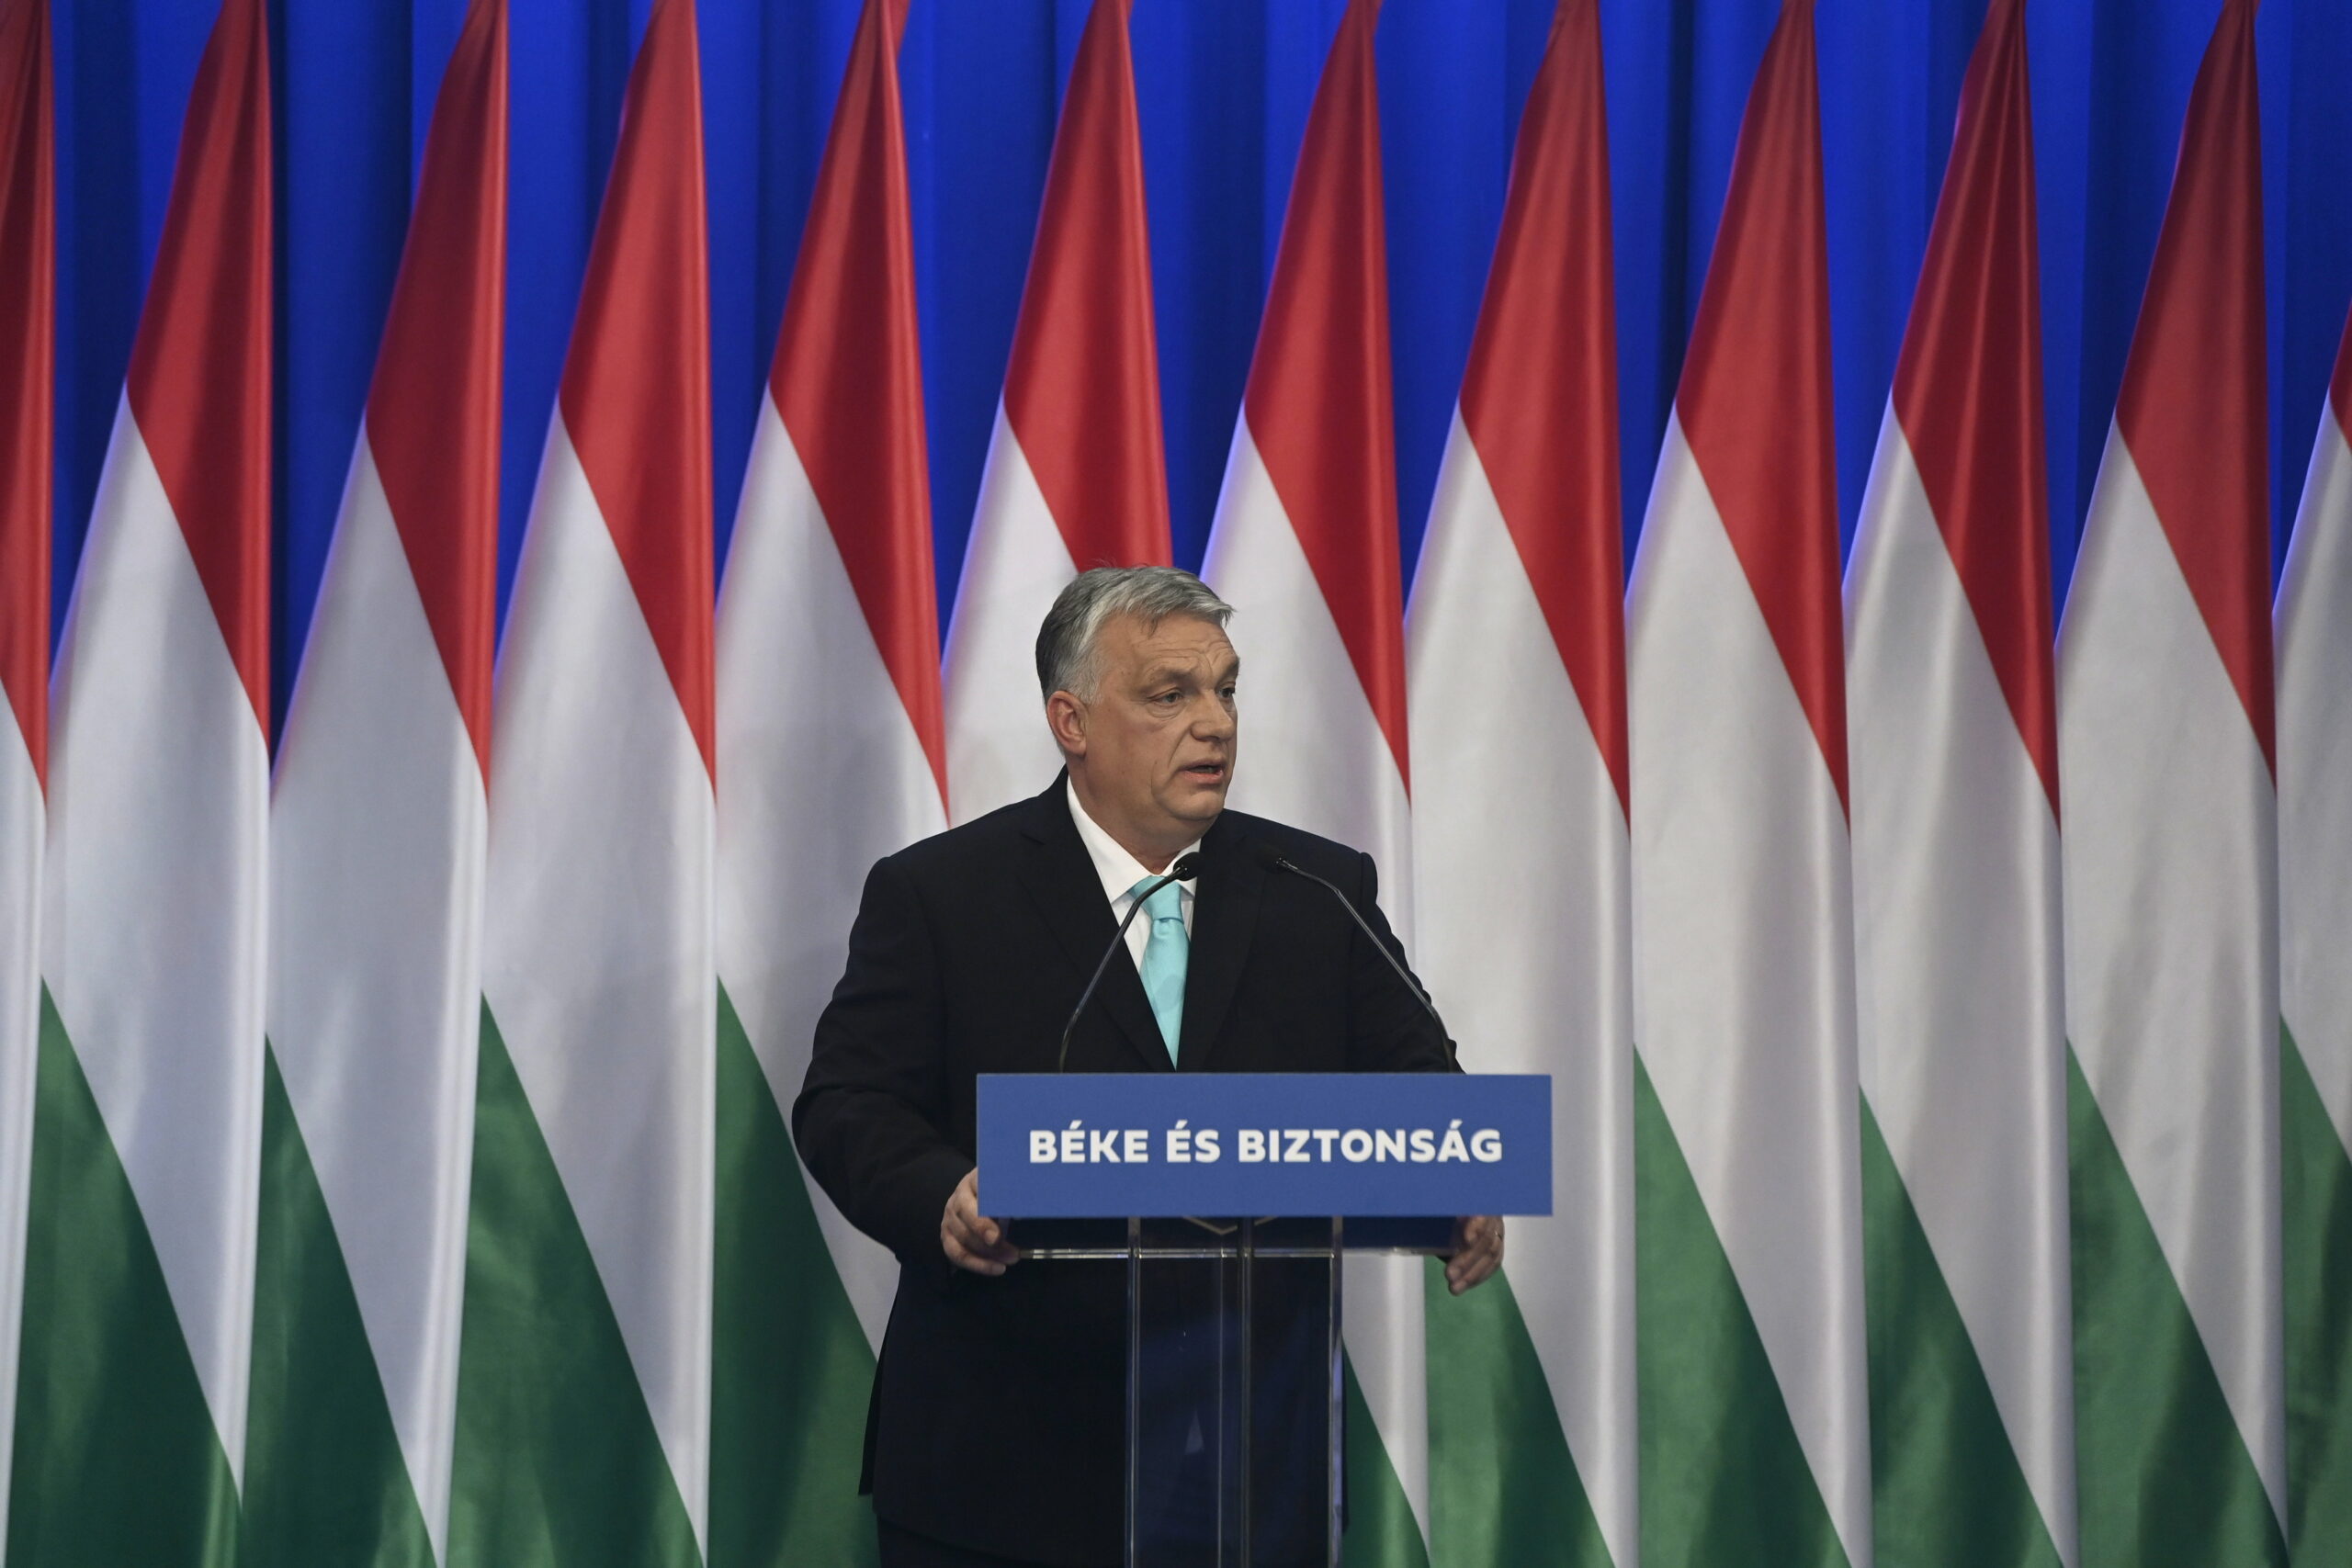 Nézőpont: Orbán Viktor a legalkalmasabb kormányfő a magyarok többsége szerint